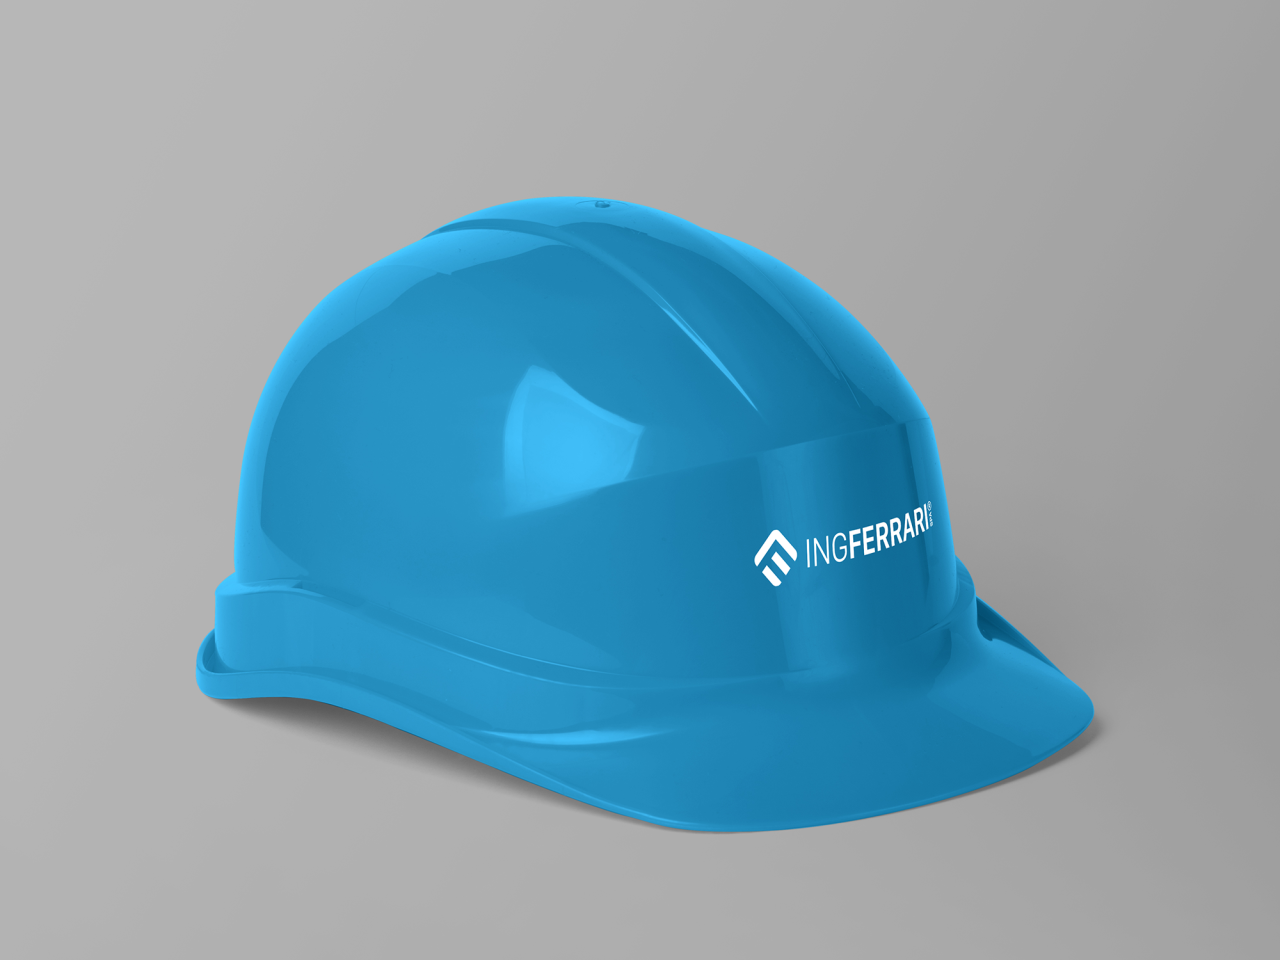 ING_Construction Helmet Mockup 2